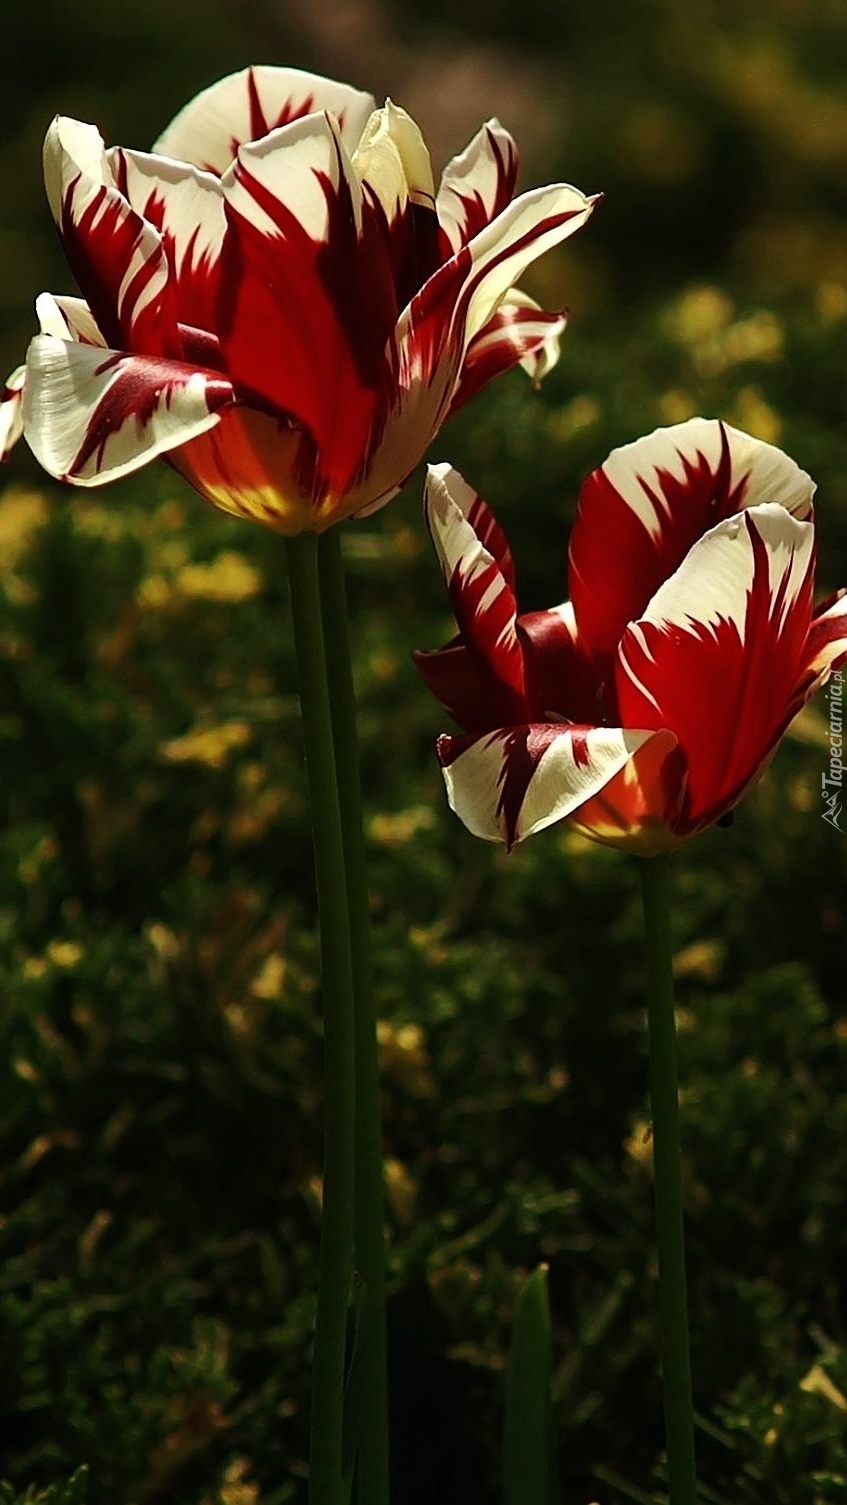 Czerwono-białe tulipany